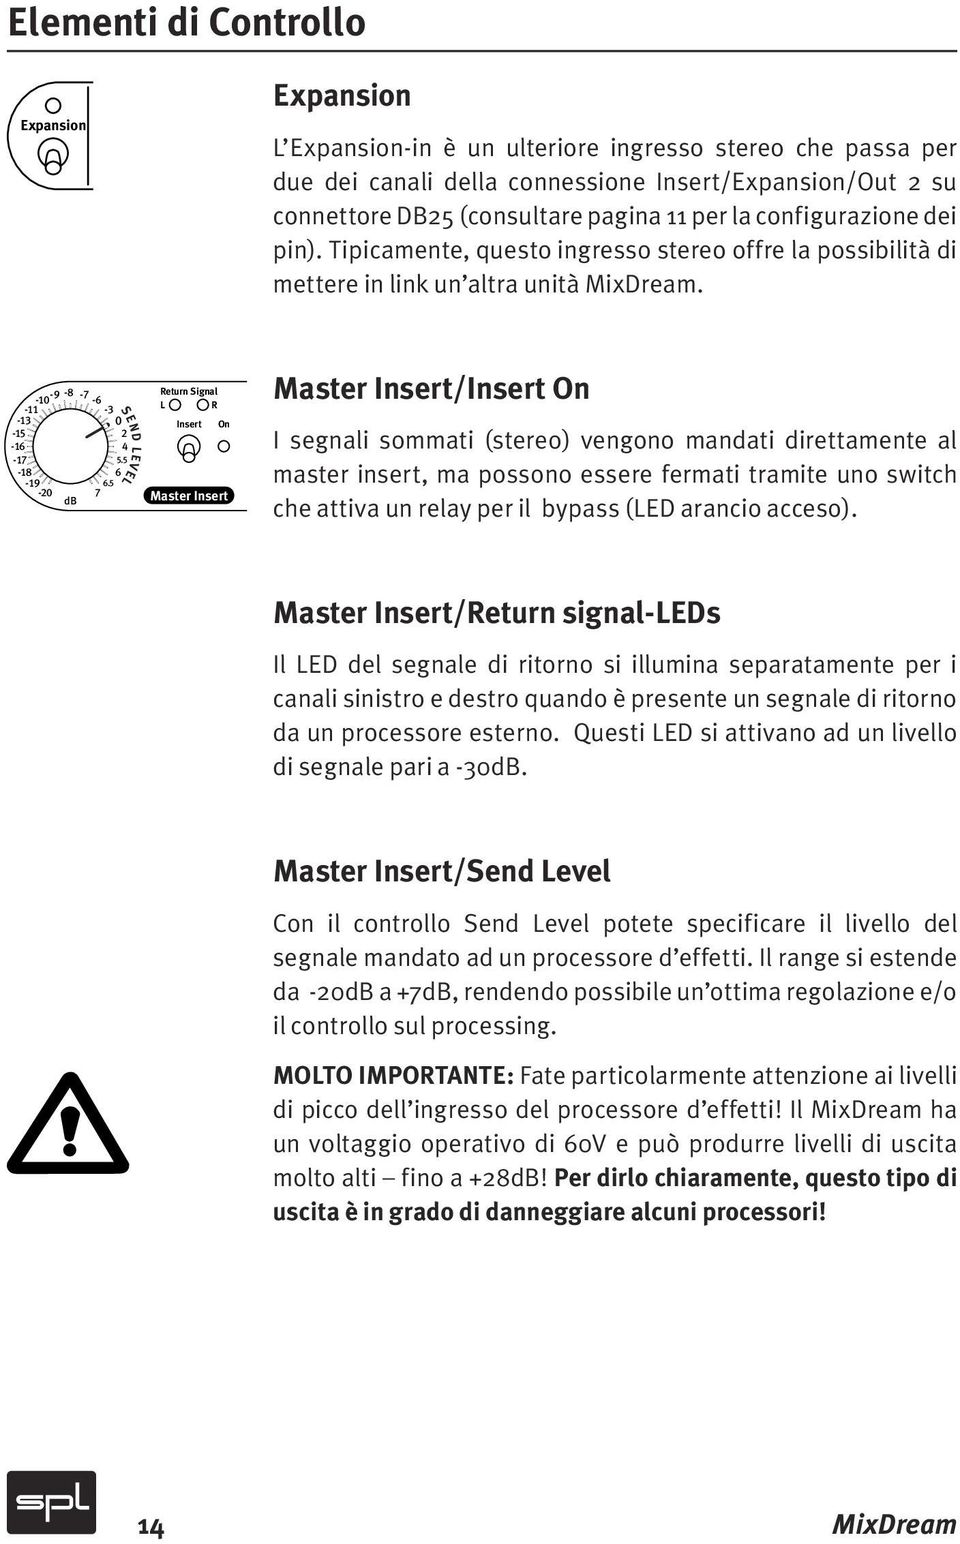 5-20 db SEND LEVEL Return Signal L R Insert Master Insert Master Insert/Insert I segnali sommati (stereo) vengono mandati direttamente al master insert, ma possono essere fermati tramite uno switch